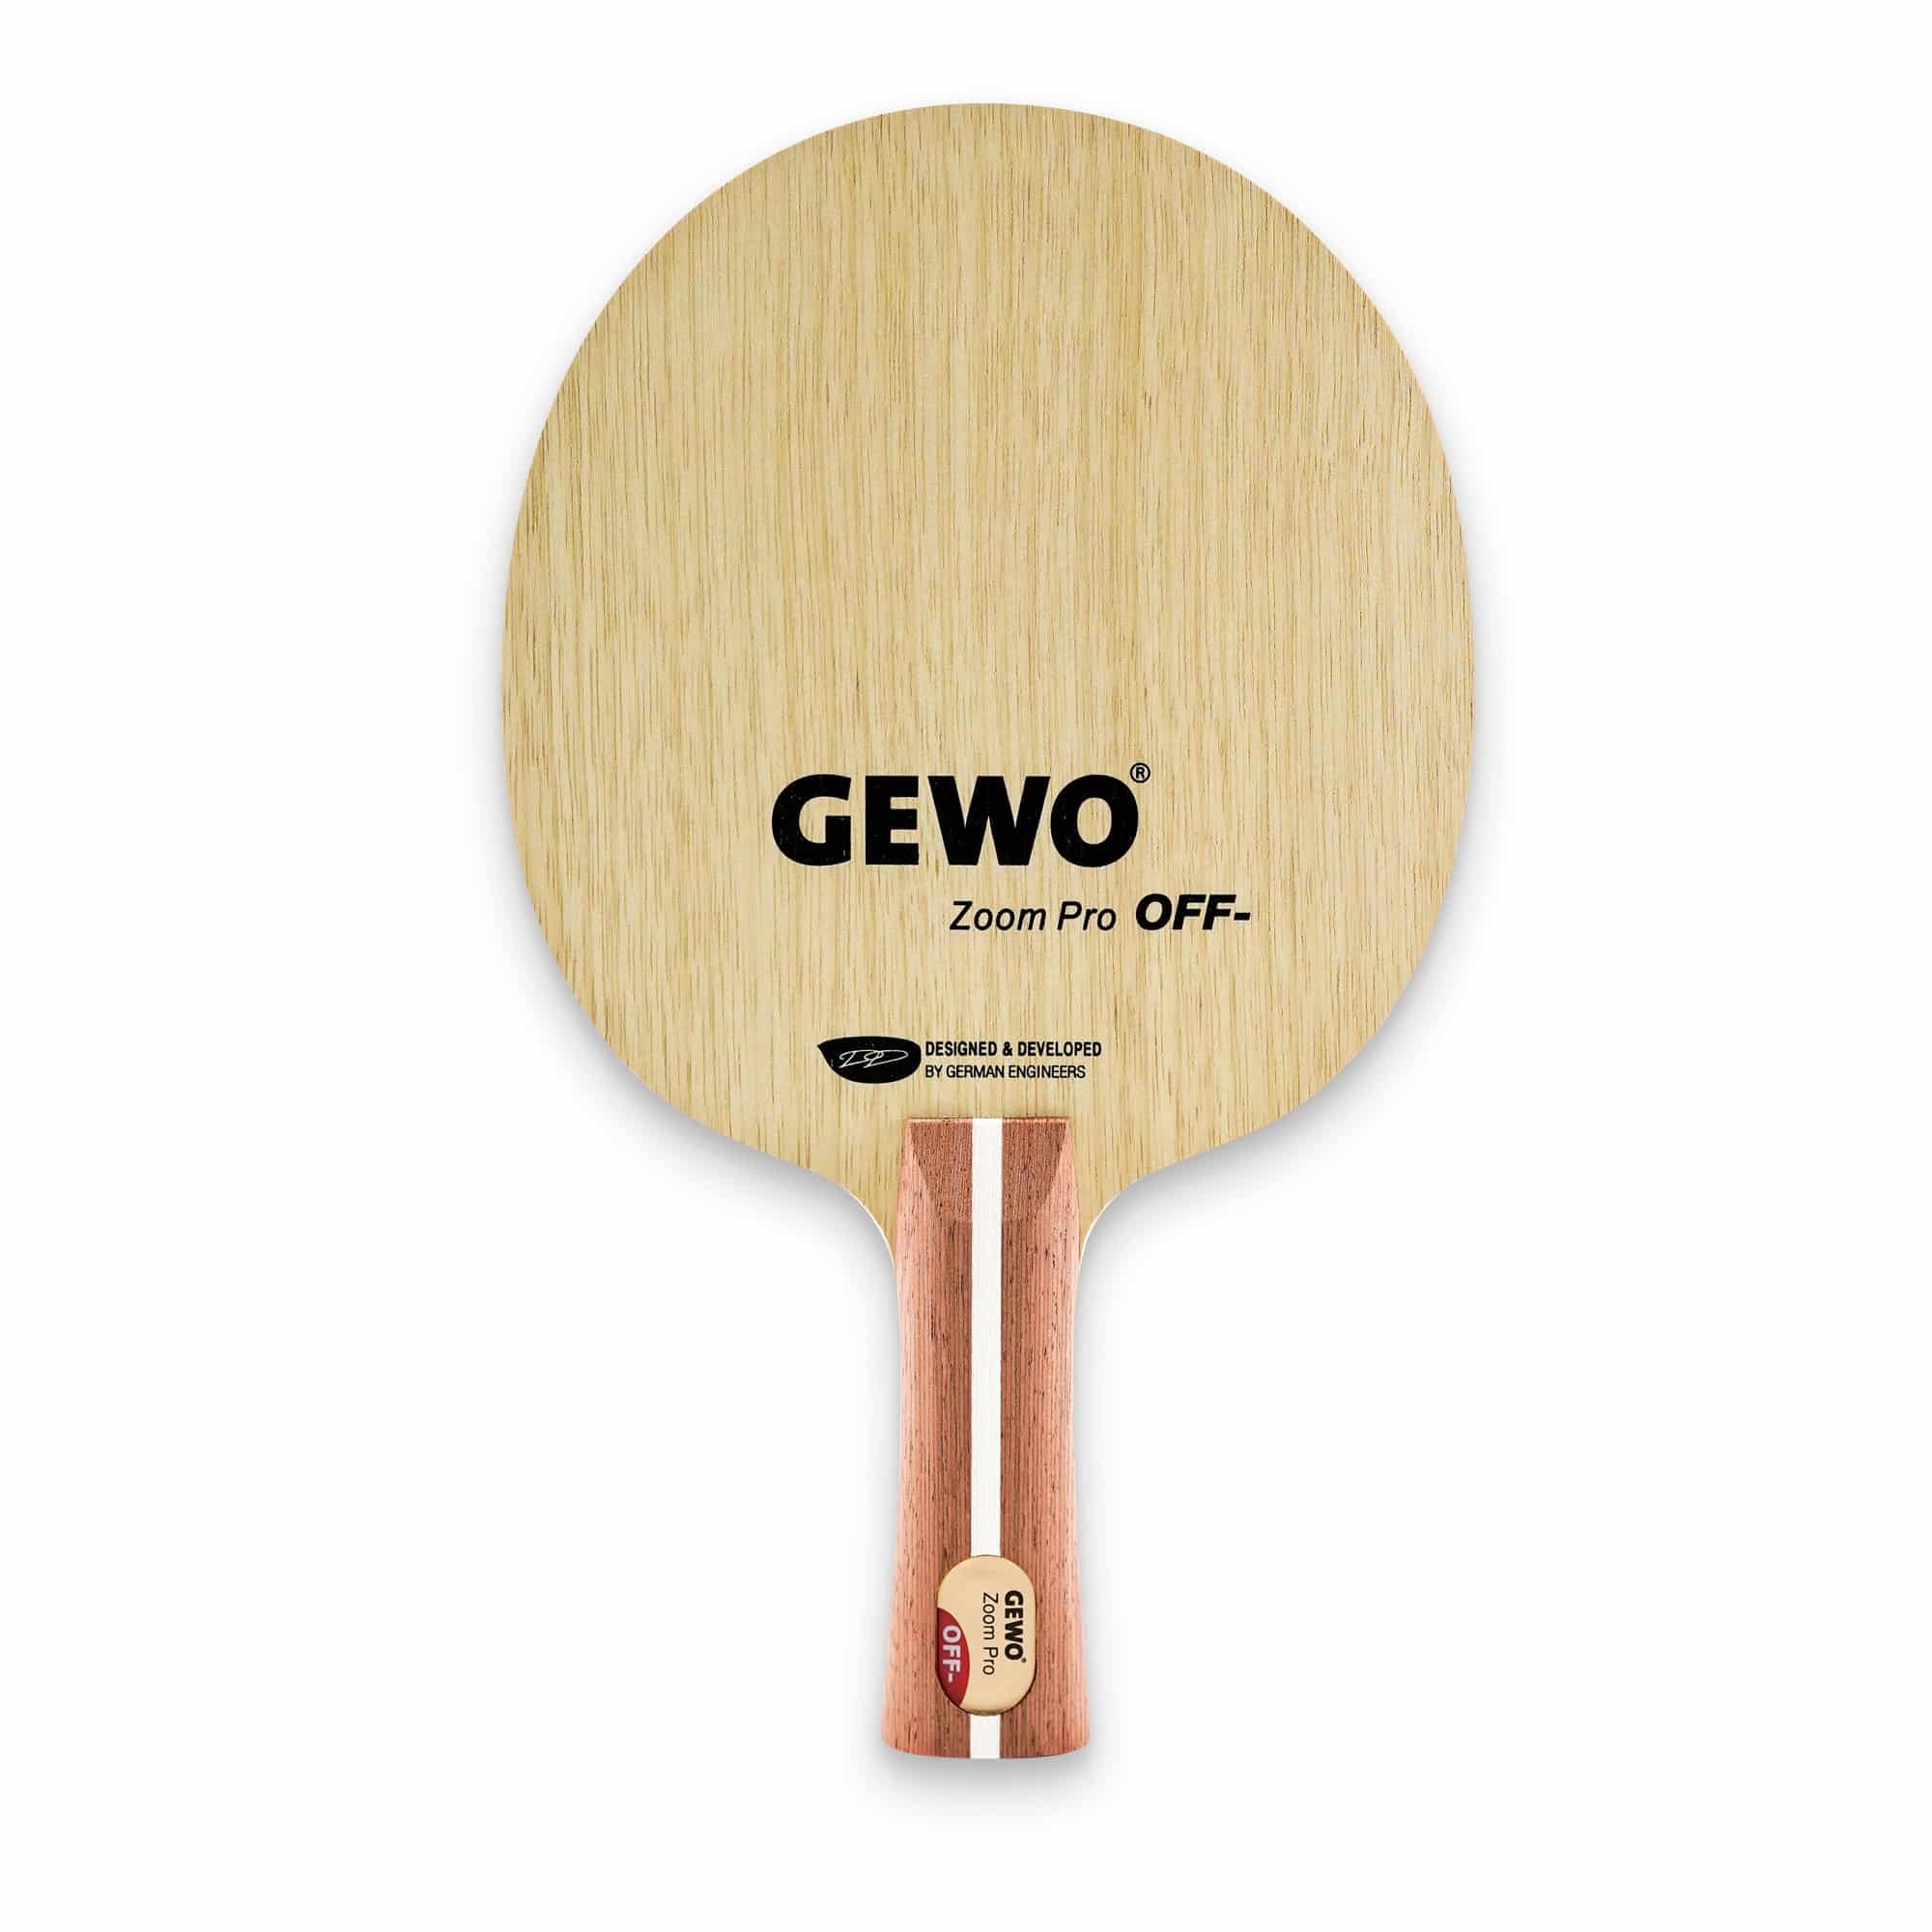 Купить основание для настольной ракетки. Ракетки Gewo. Фирма Gewo настольный теннис. Основание ракетки Gewo. Параметры основания ракетки для настольного тенниса.